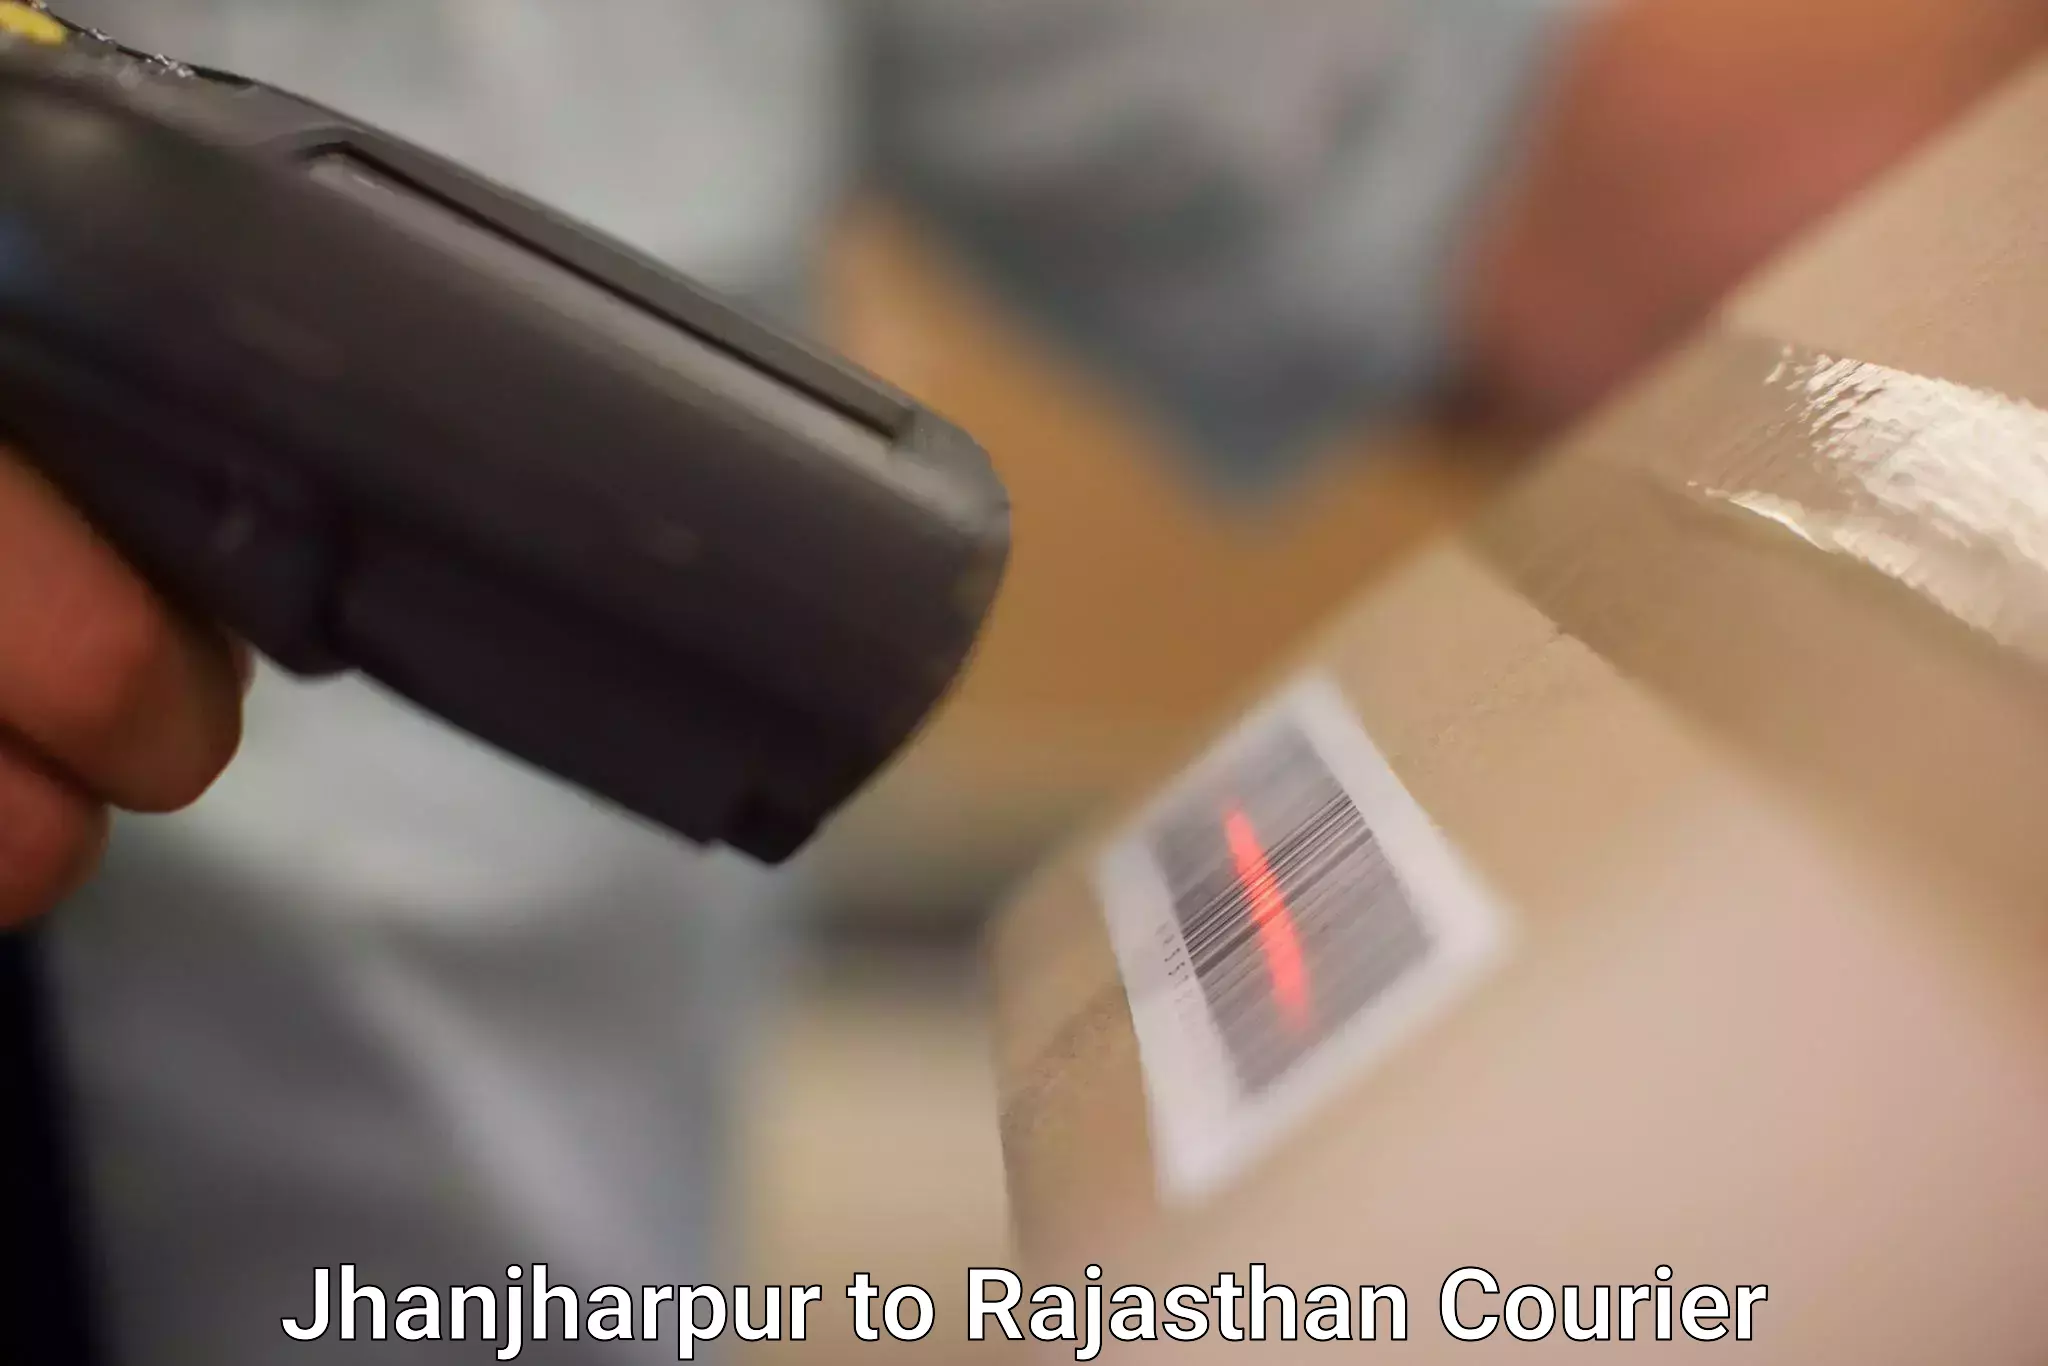 Efficient shipping operations Jhanjharpur to Nainwa